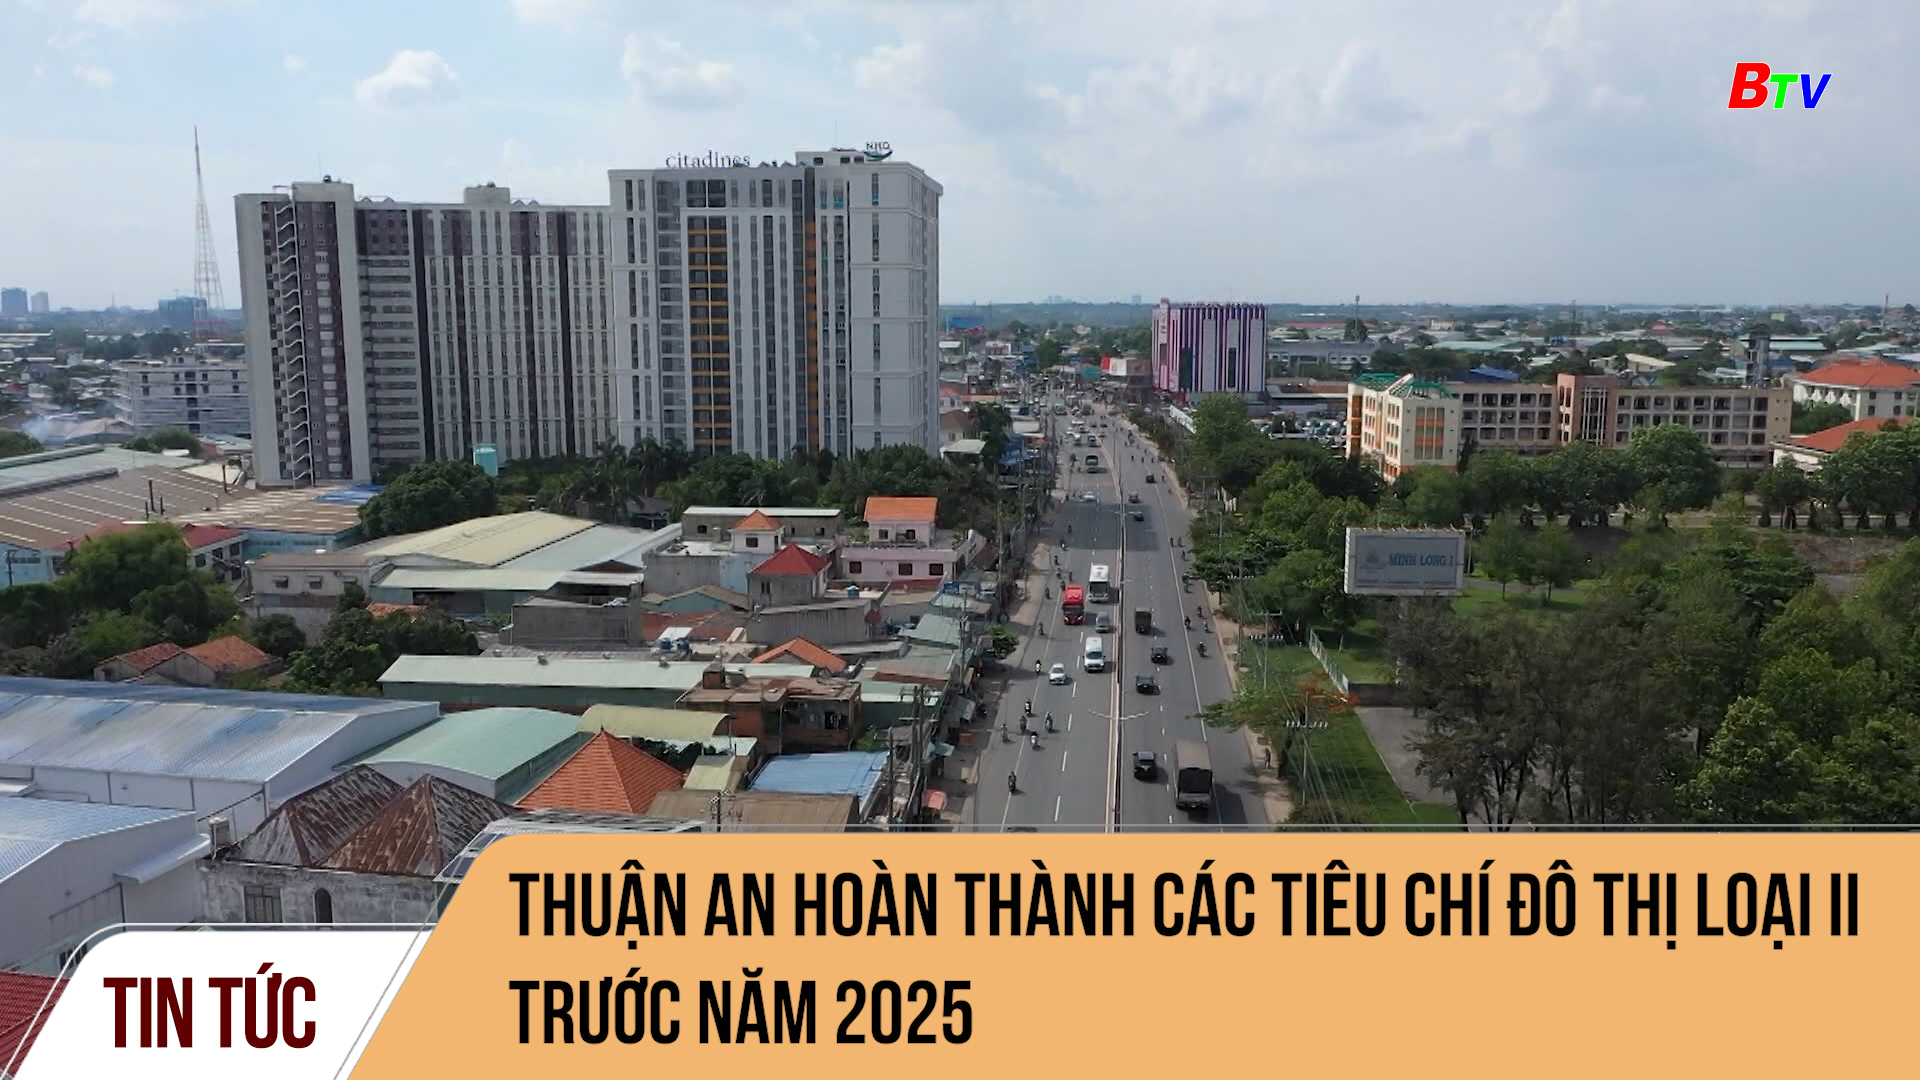 Thuận An hoàn thành các tiêu chí đô thị loại II trước năm 2025